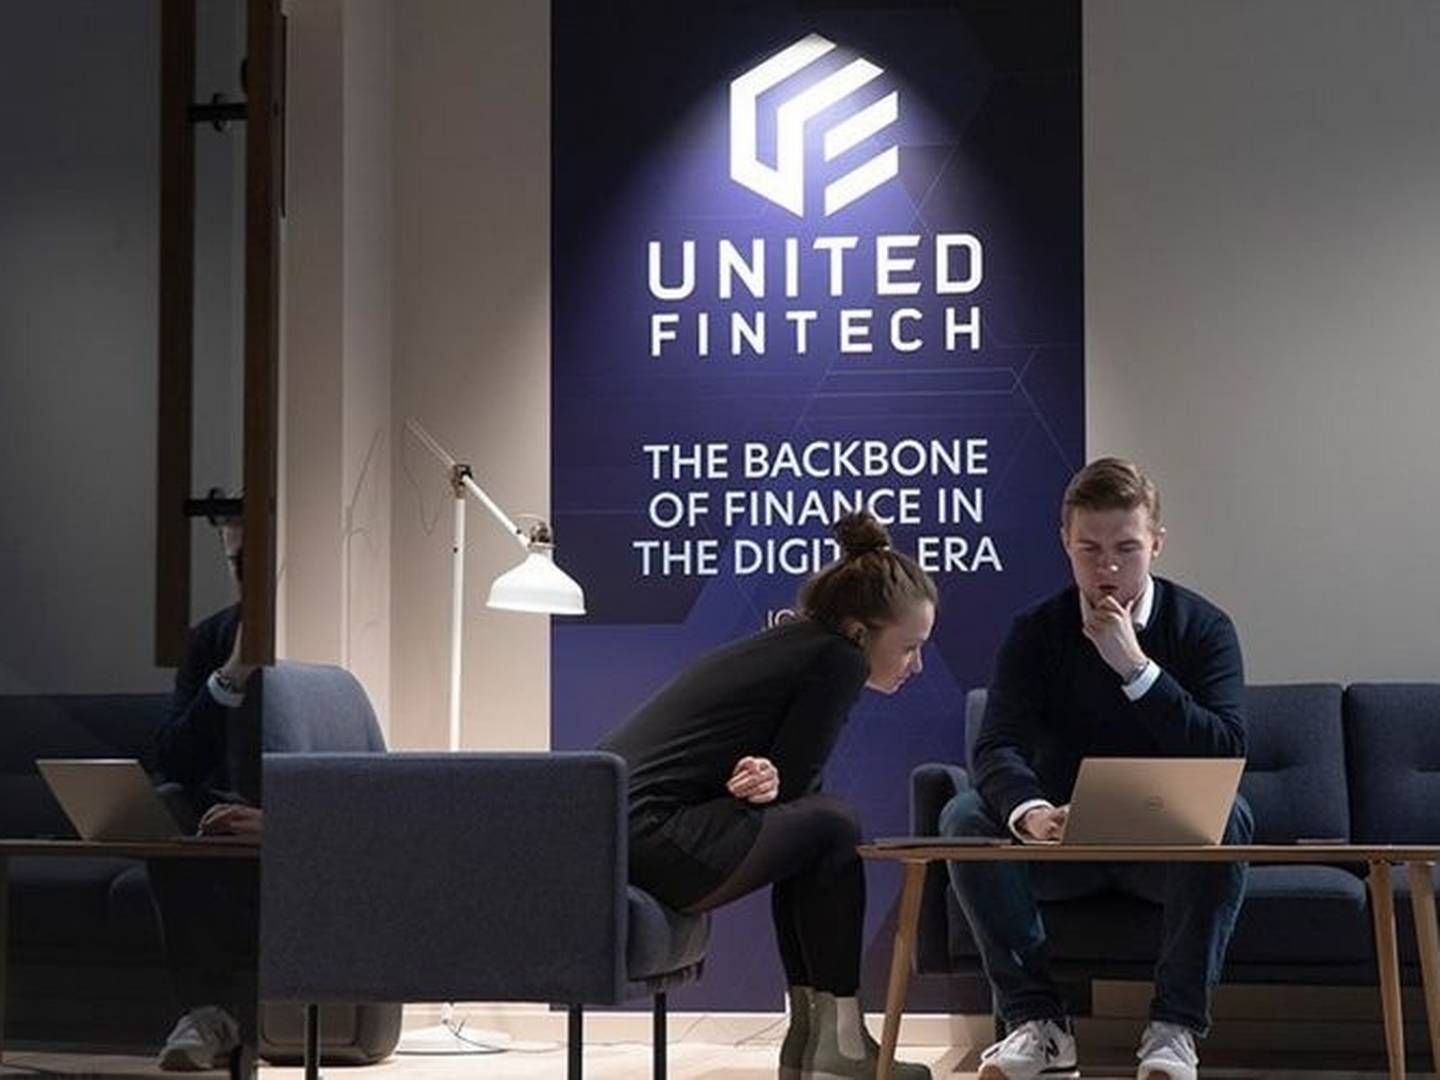 United Fintech blev stiftet i 2020 og beskæftiger omkring 160 mennesker i otte lande. De har ca. 200 kunder inden for finansielle tjenesteydelser. | Foto: Martine Thorsager Stock